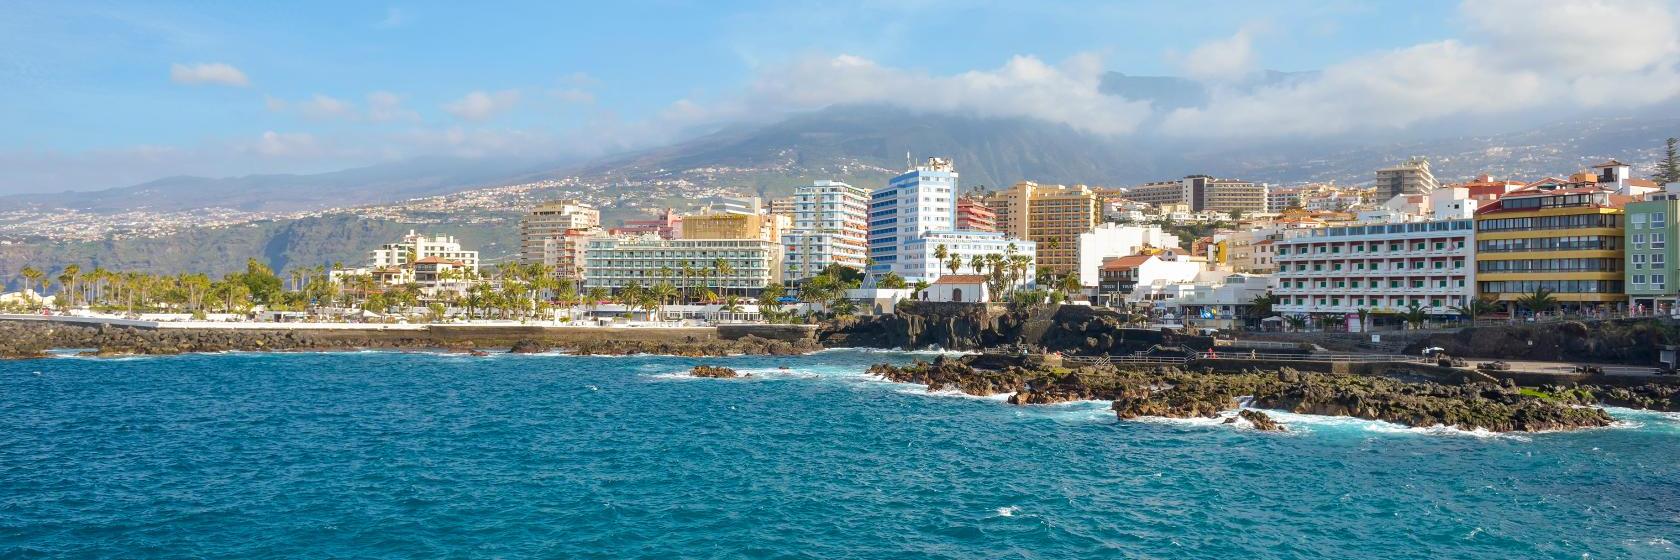 10 Best Puerto de la Cruz Hotels, Spain (From $38)